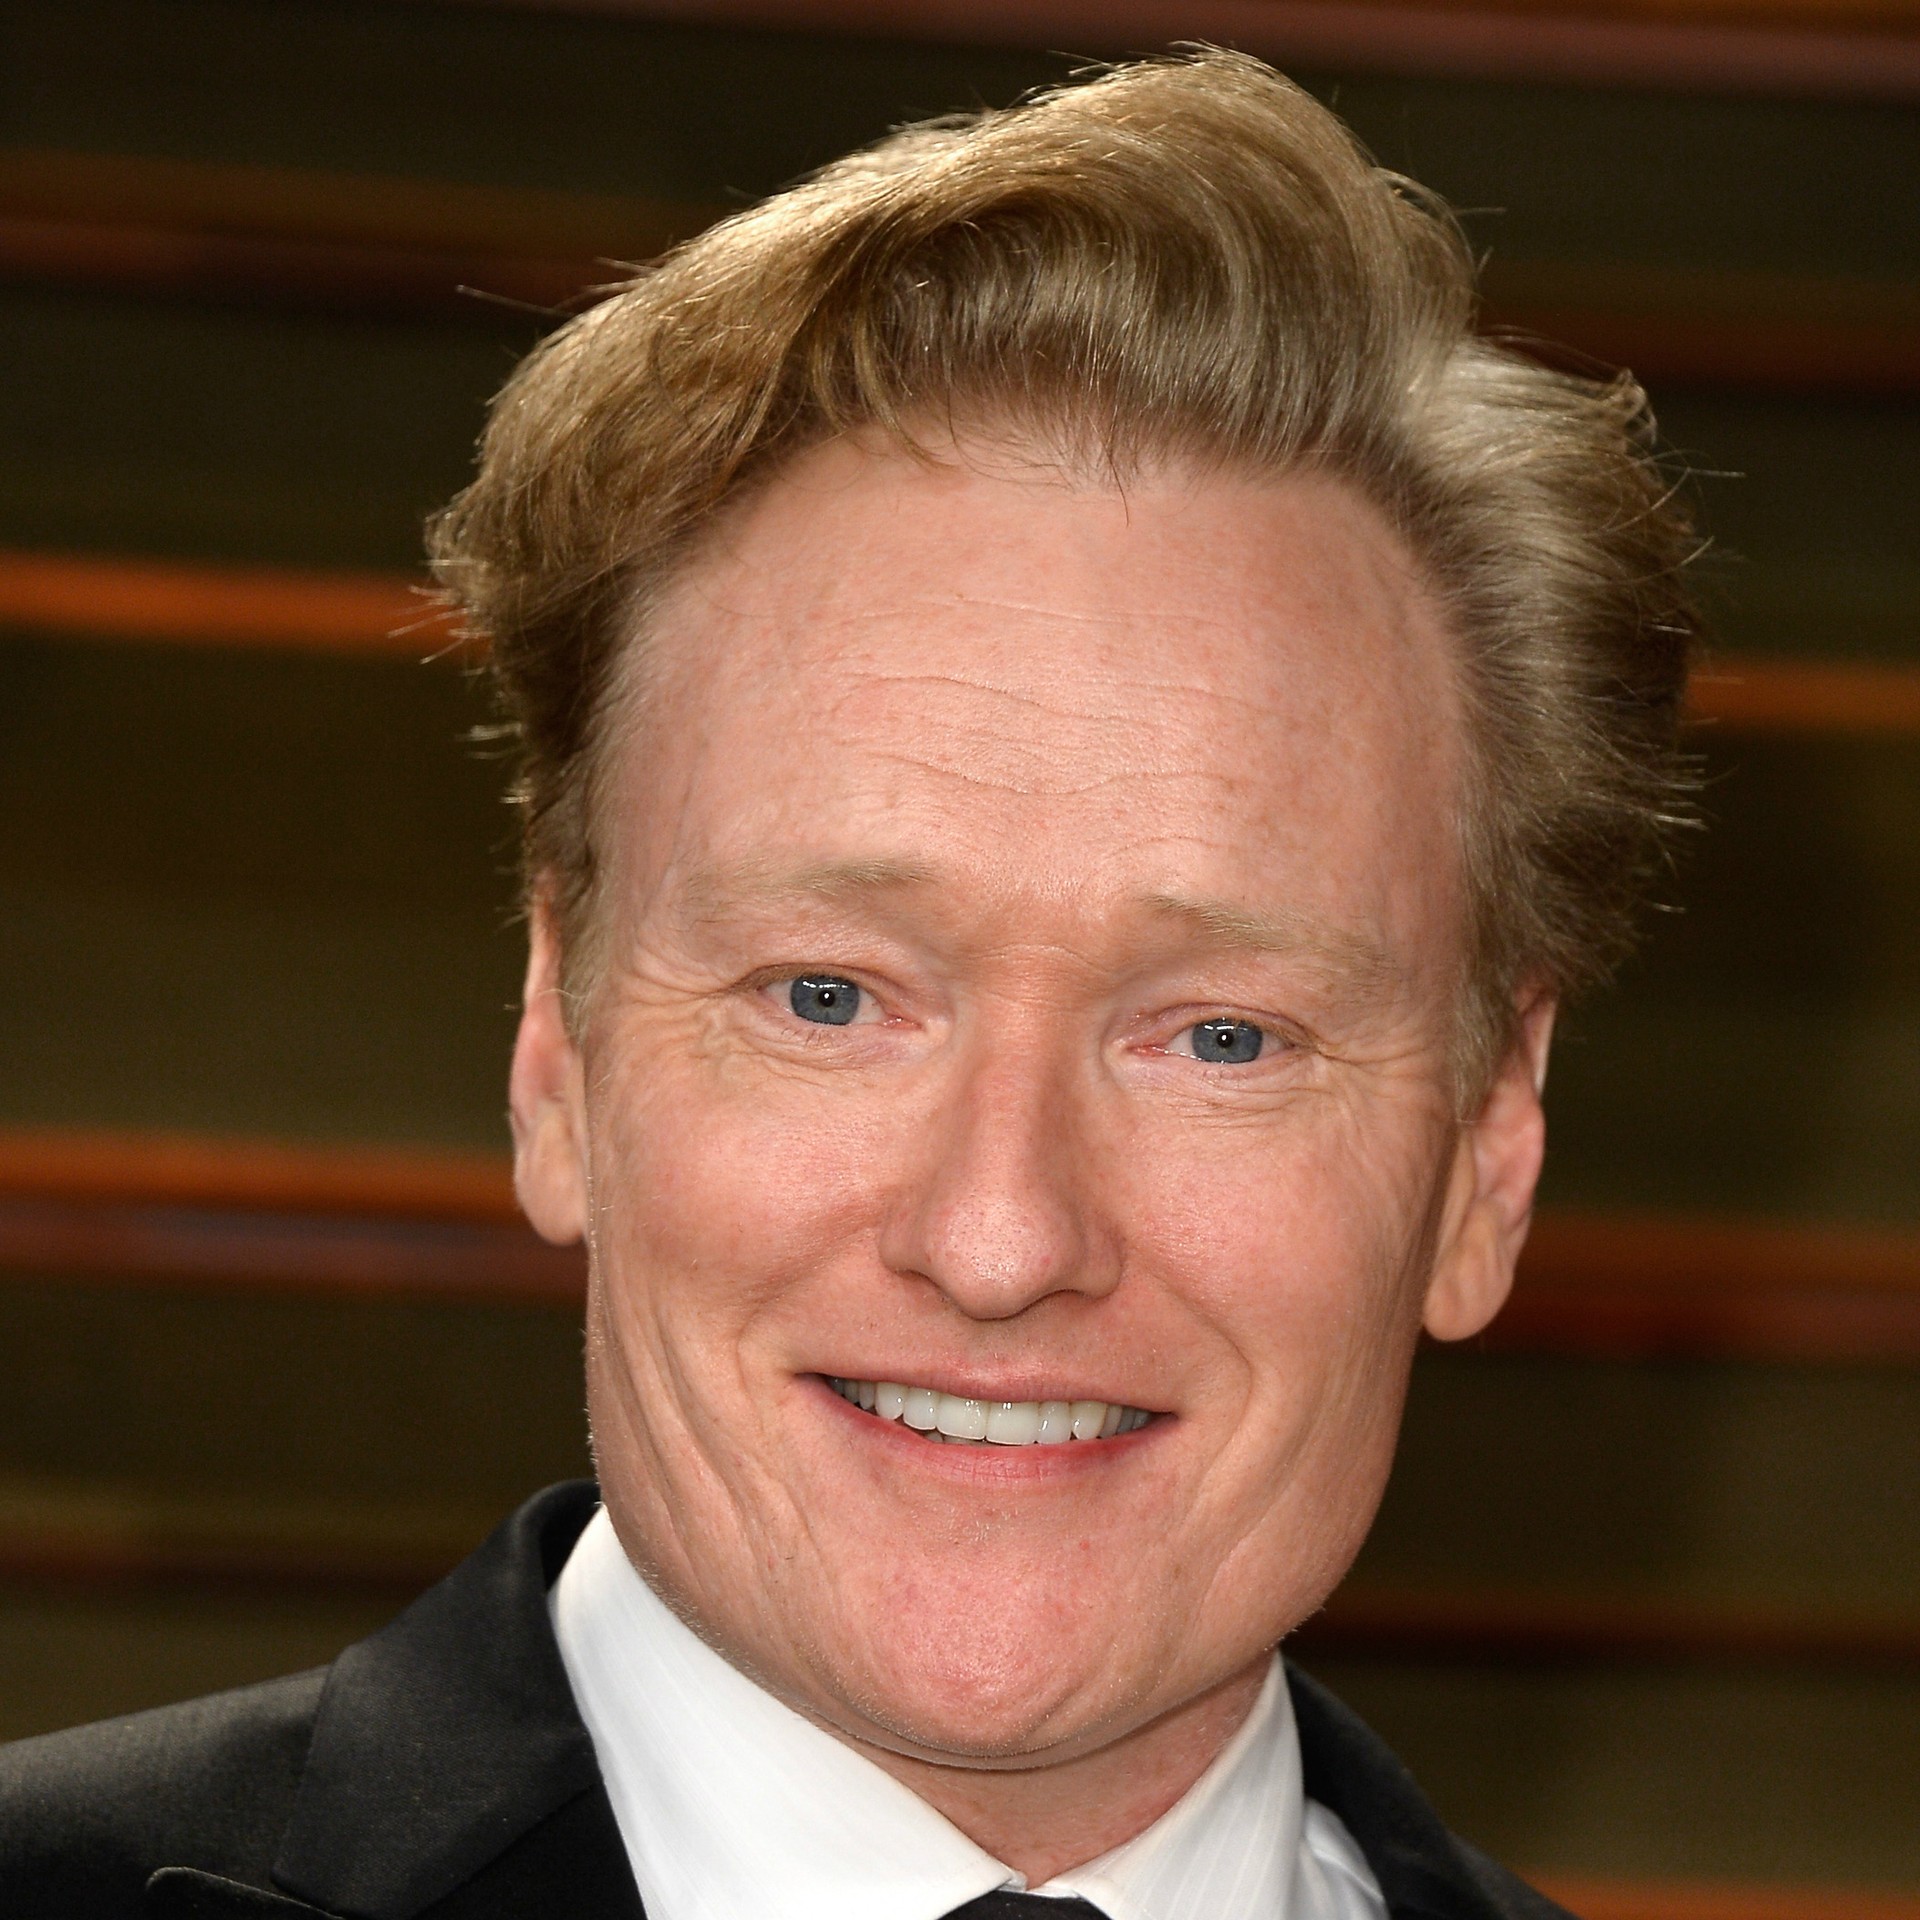 Por sua vez, o ator, comediante e apresentador de TV Conan O’Brien é, até hoje, ótimo sapateador. (Foto: Getty Images)